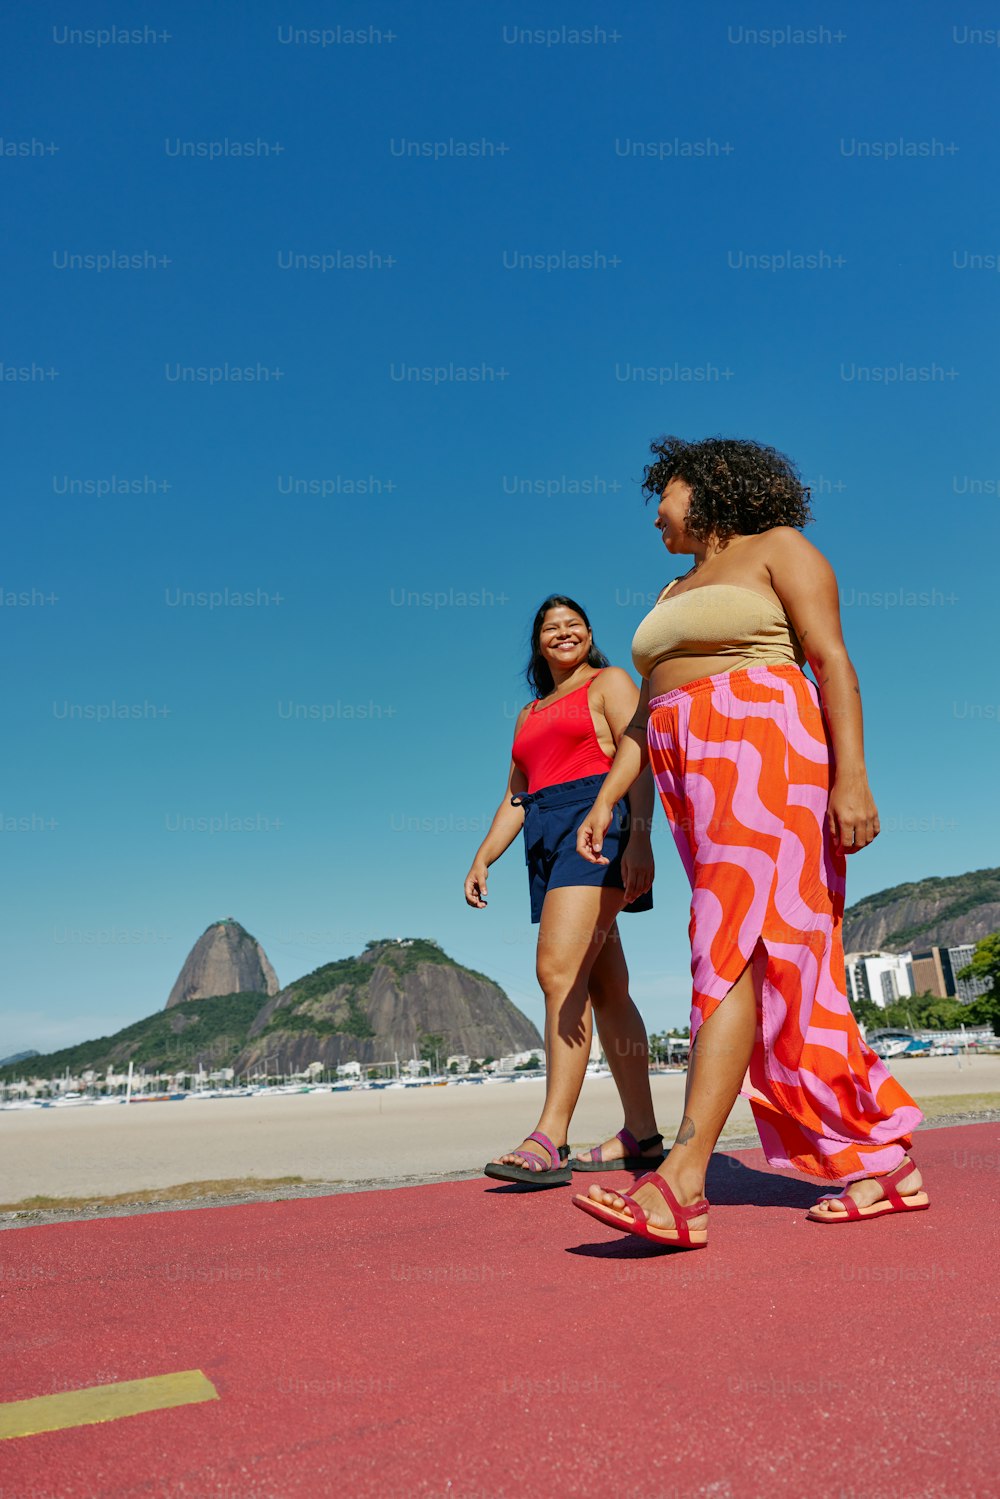 해변을 가로질러 걷고 있는 두 명의 여성